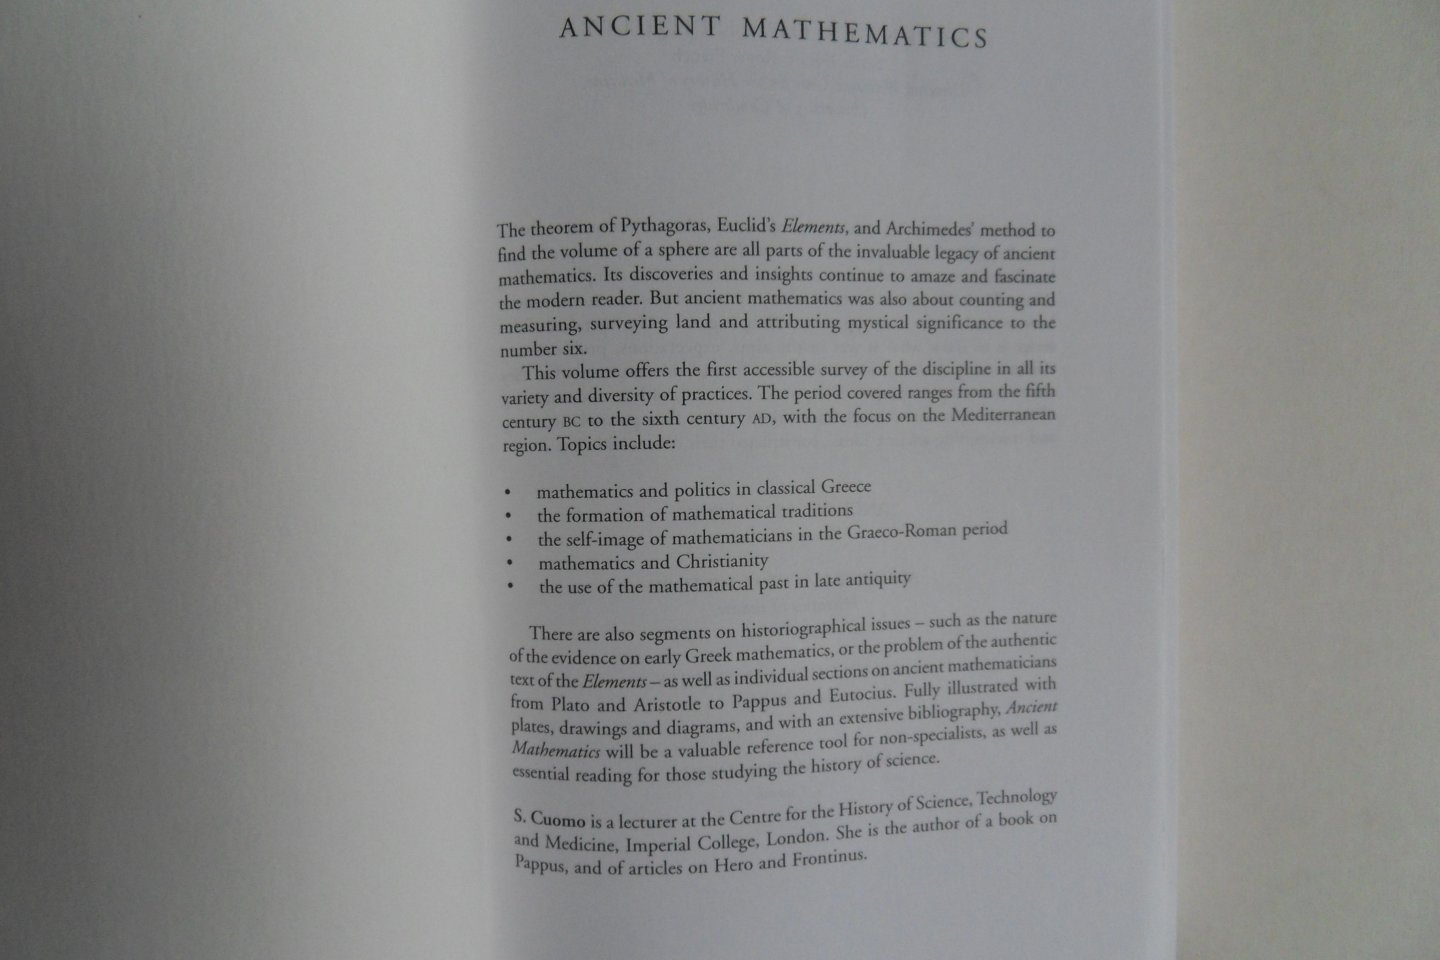 Cuomo, S. - Ancient Mathematics.